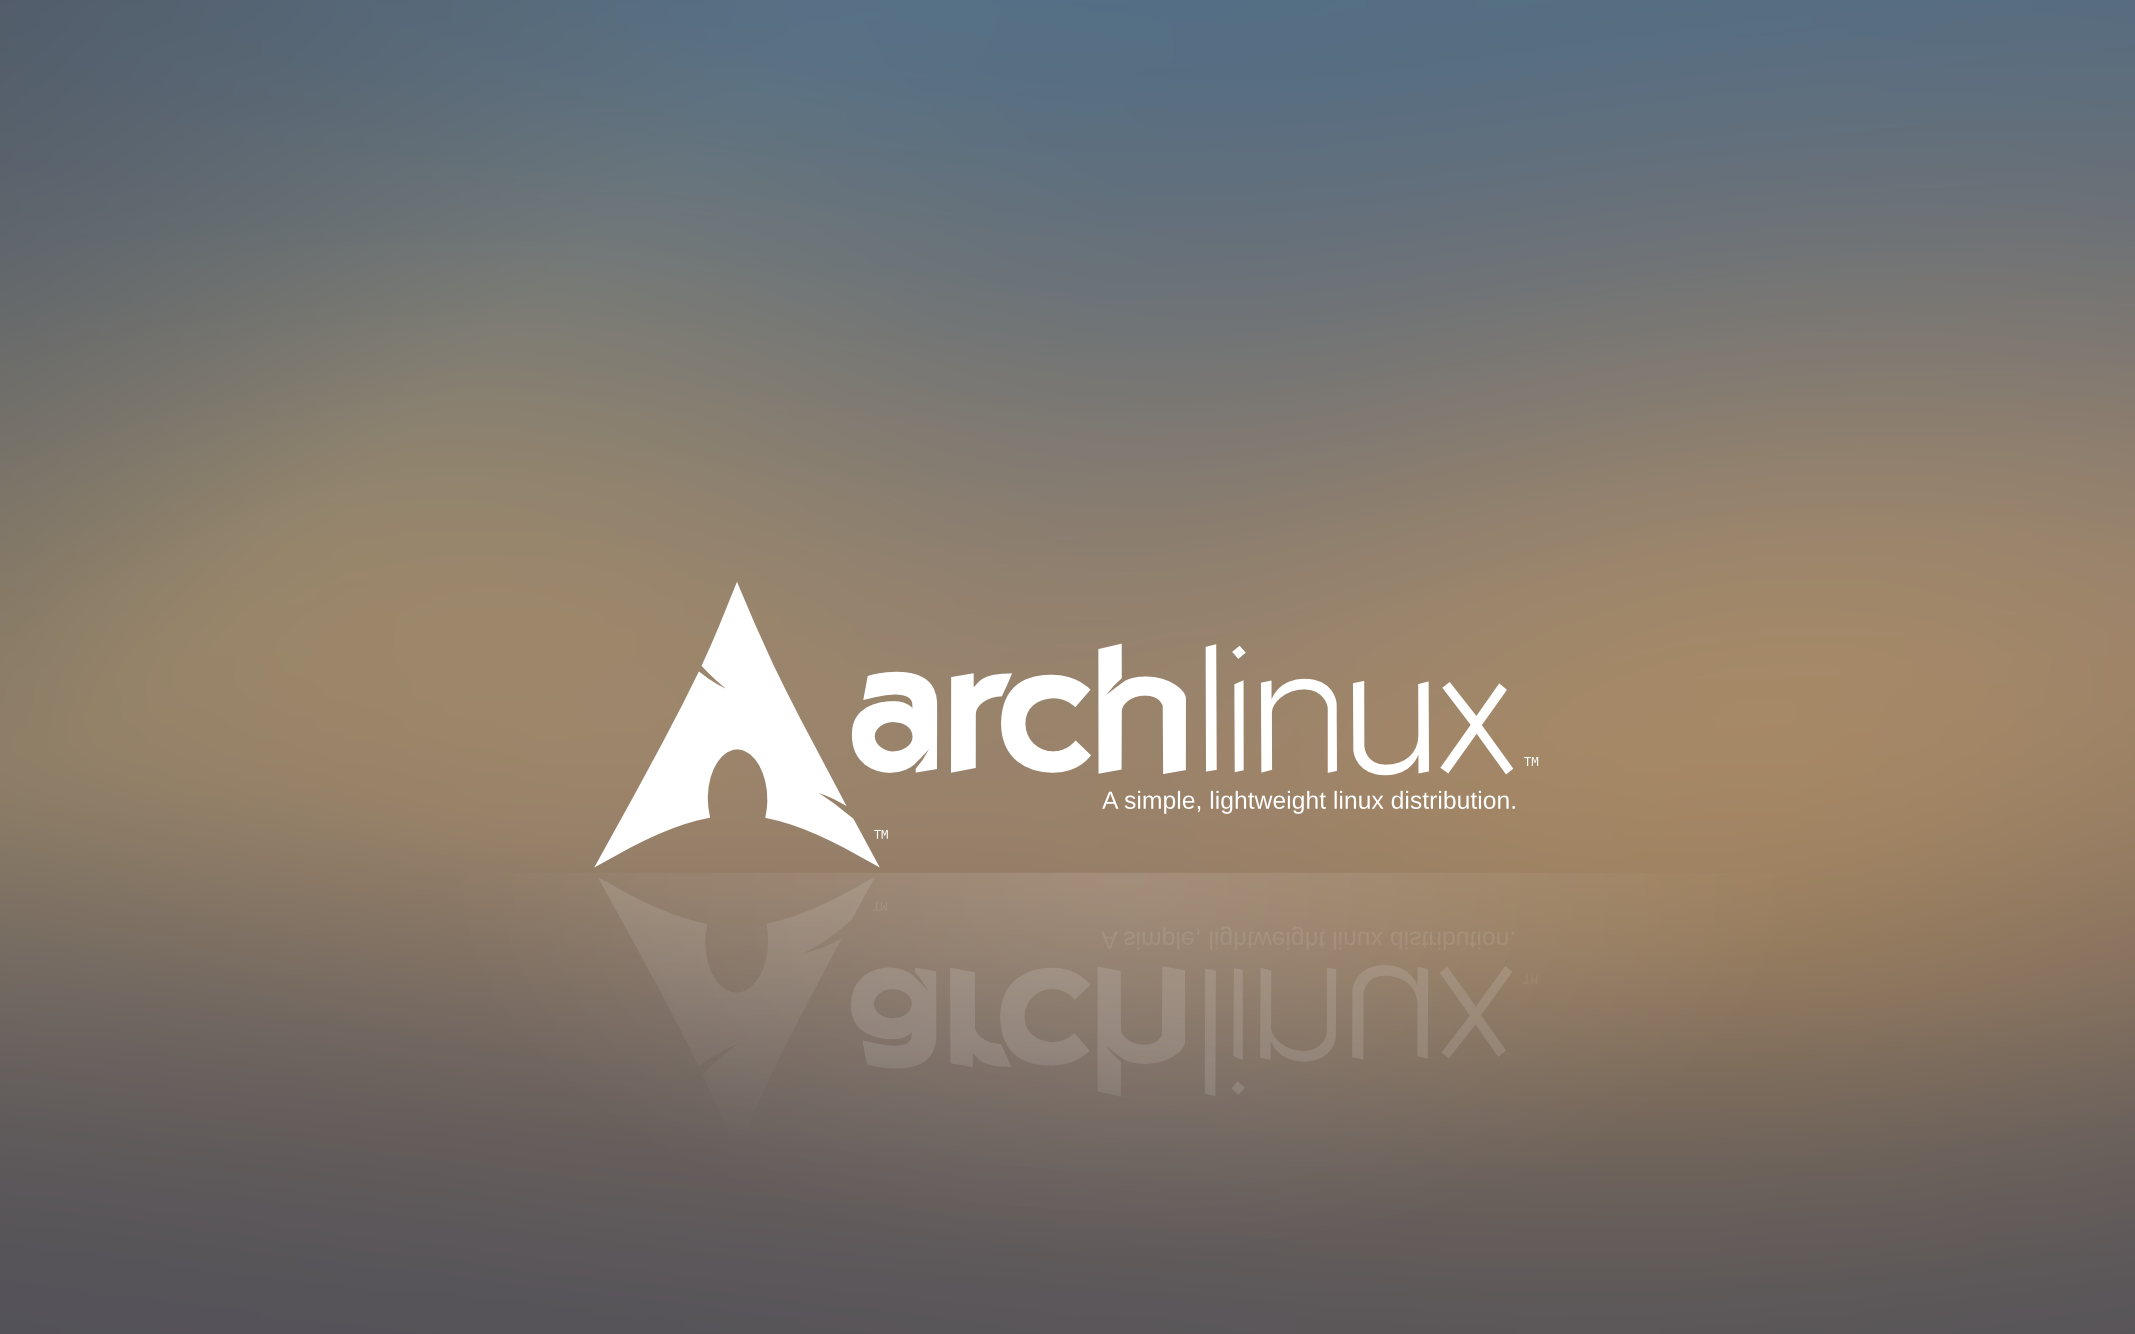 arc linux fond d'écran hd,police de caractère,ciel,triangle,graphique,conception graphique